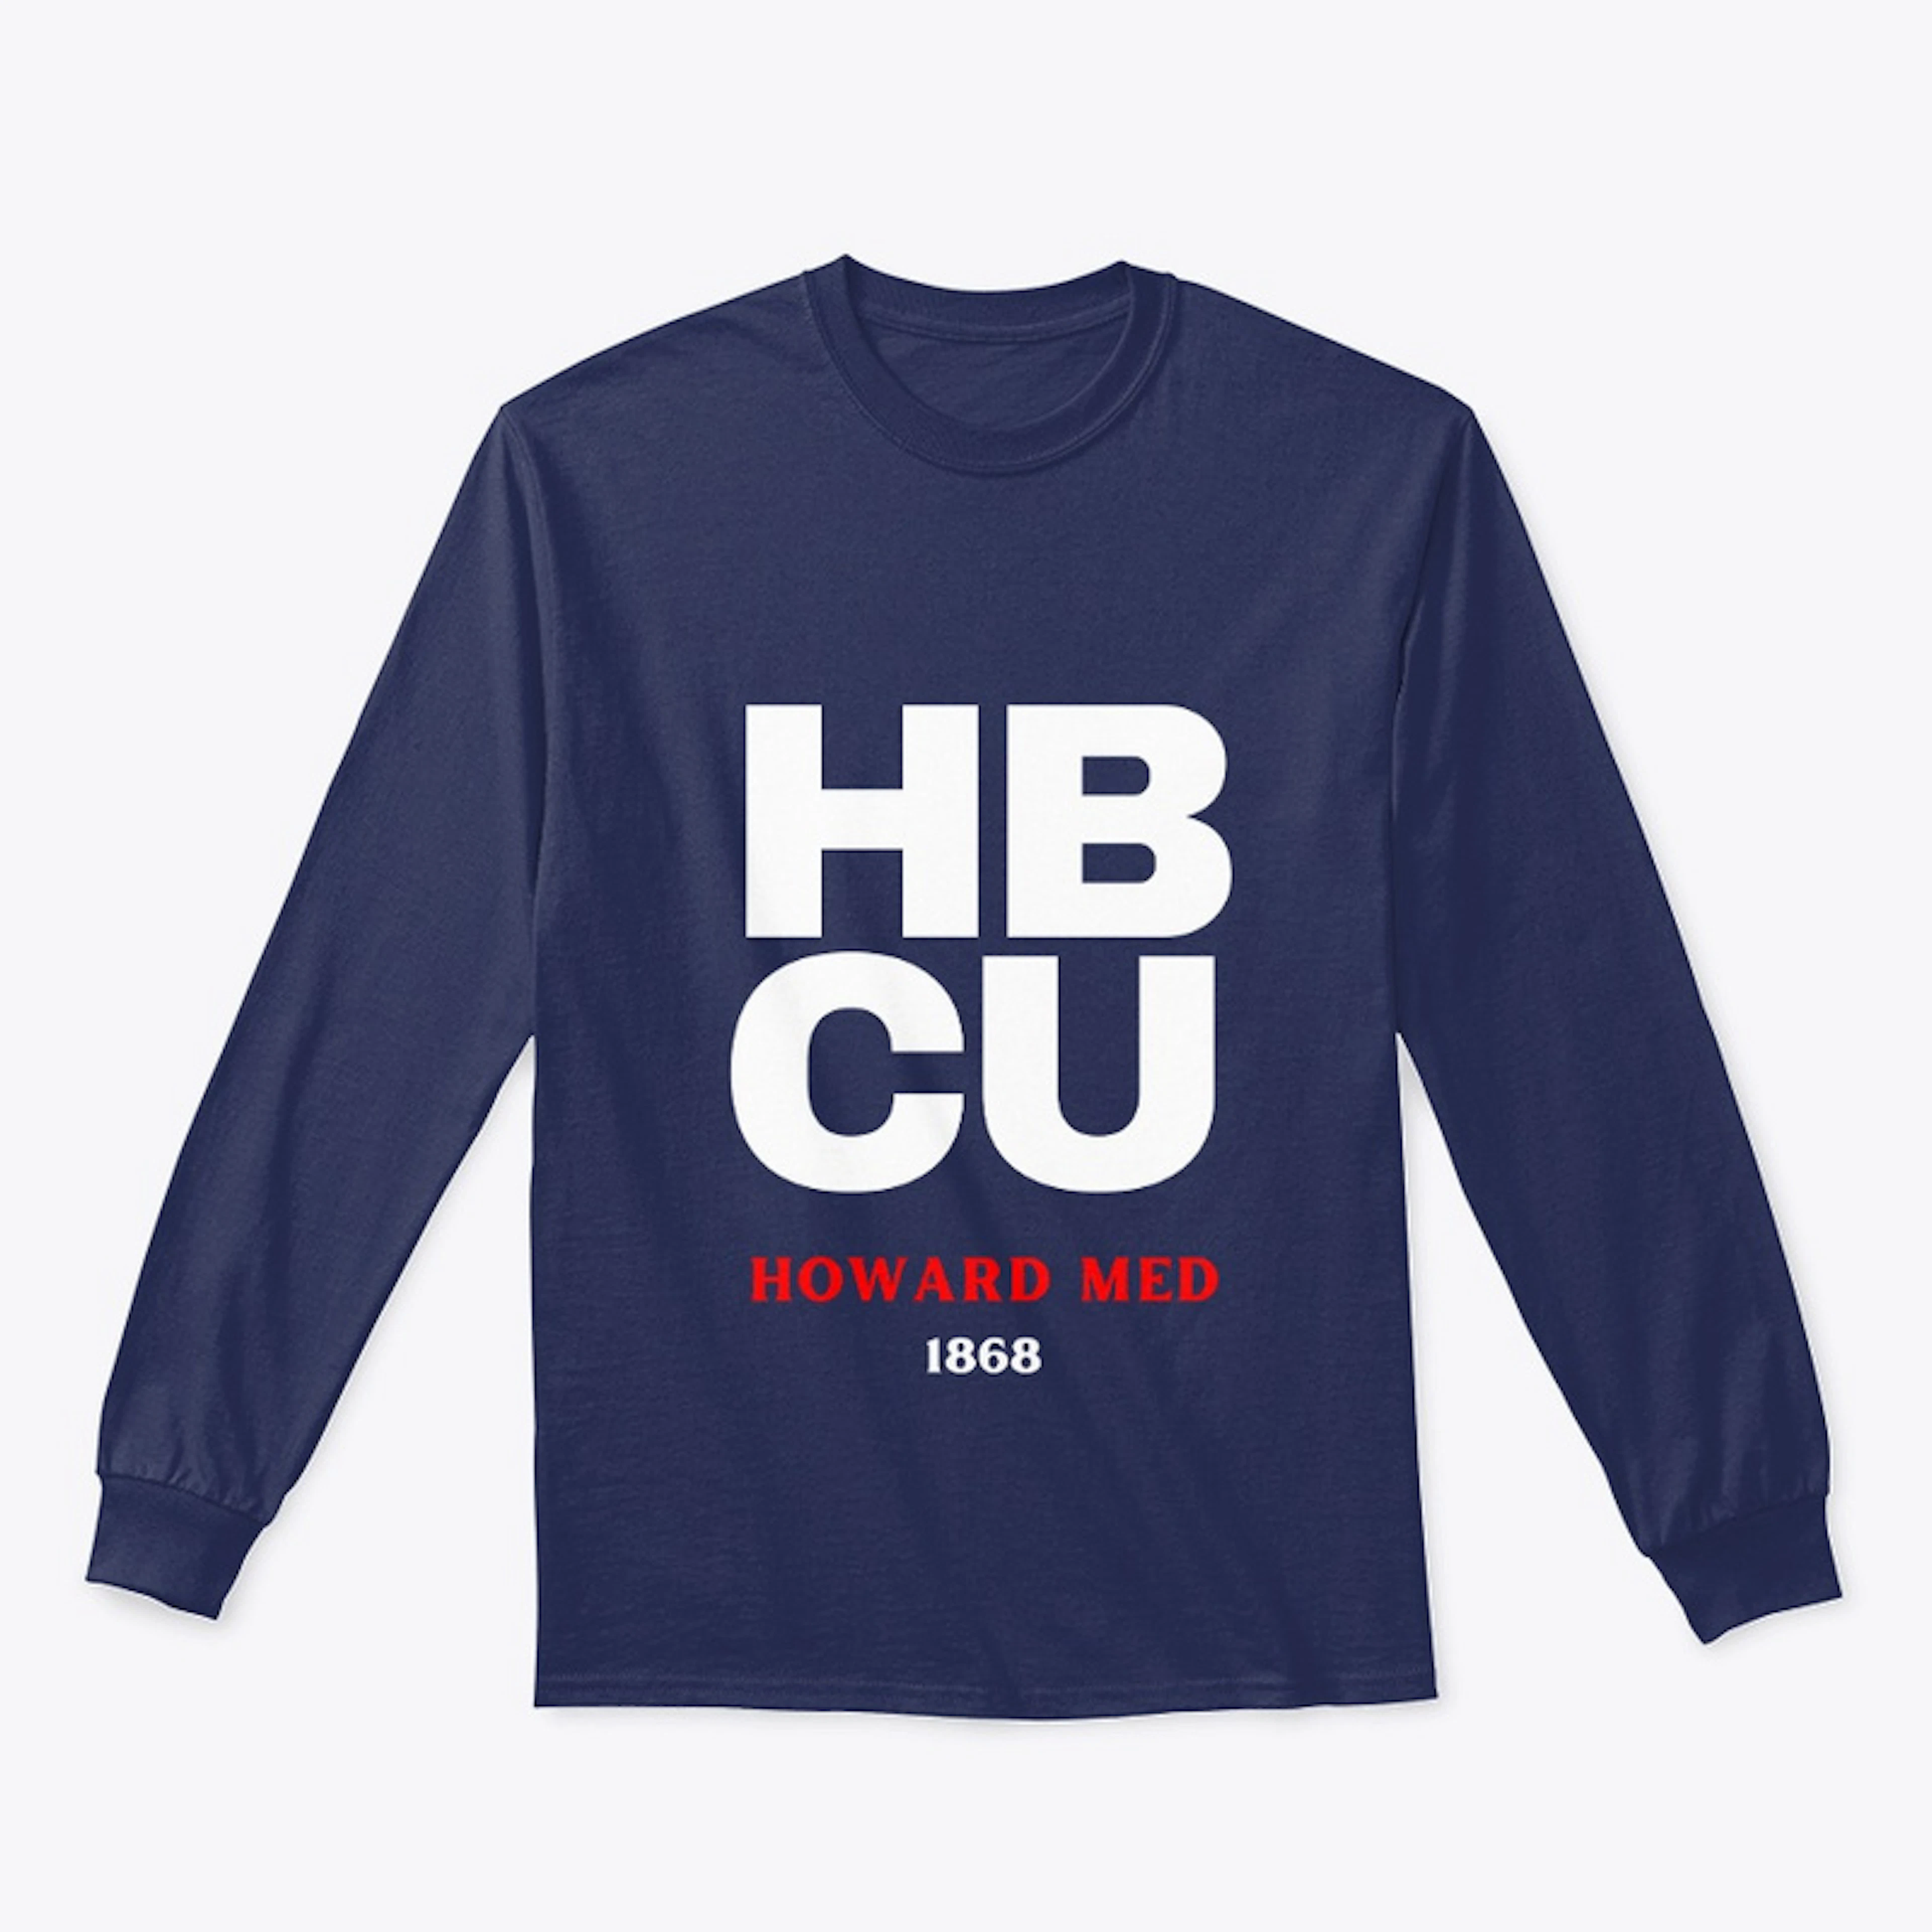 HBCU: Howard Univ. College of Medicine